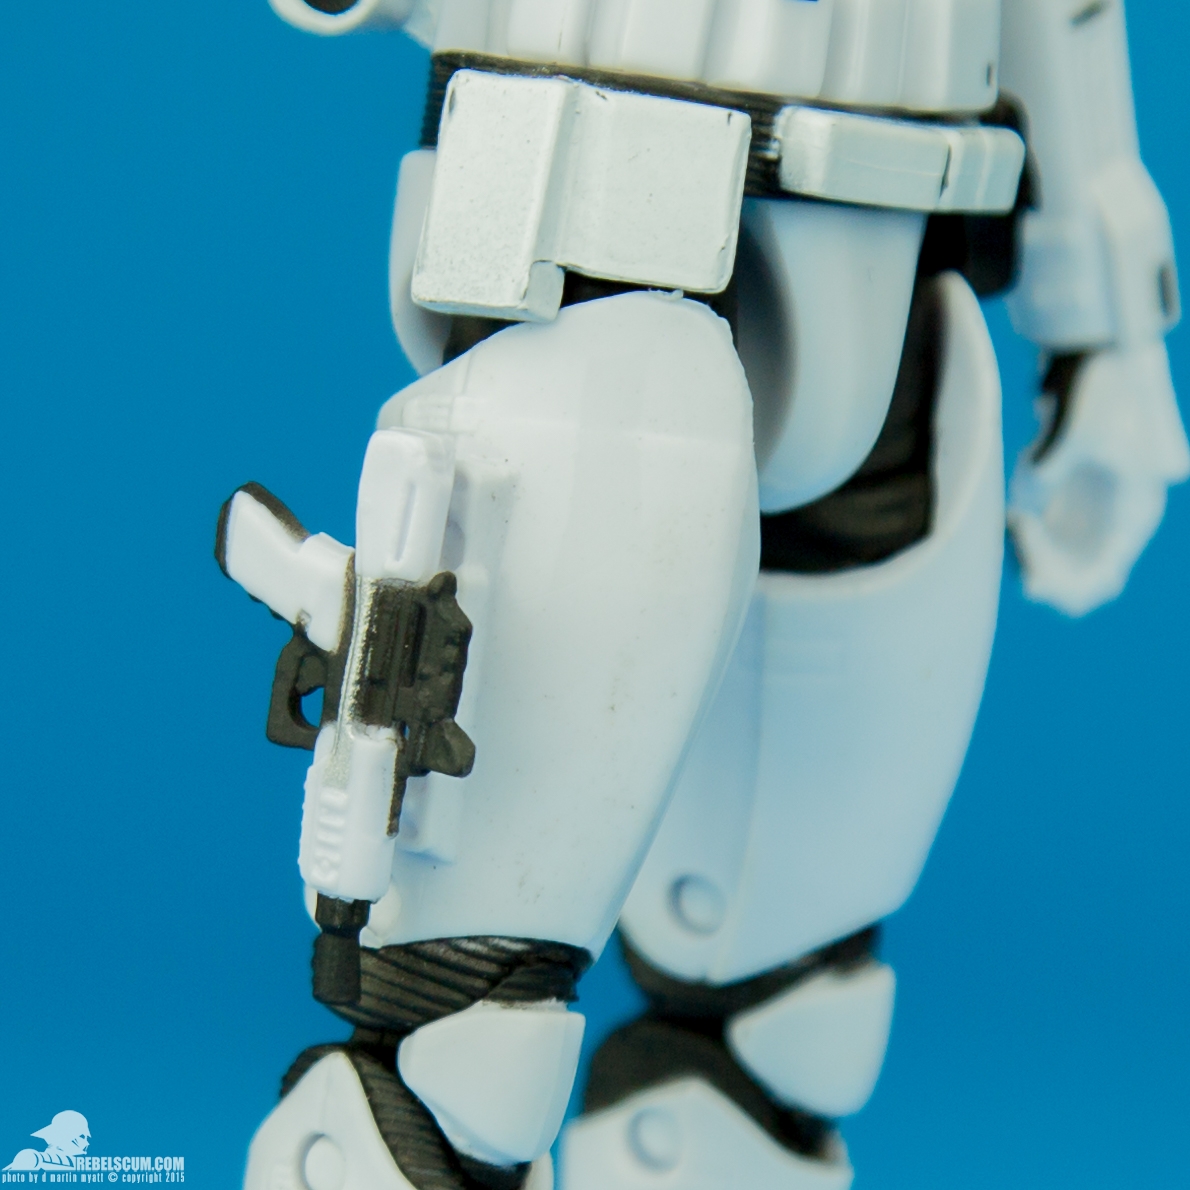 04-First-Order-Stormtrooper-The-Black-Series-2015-007.jpg